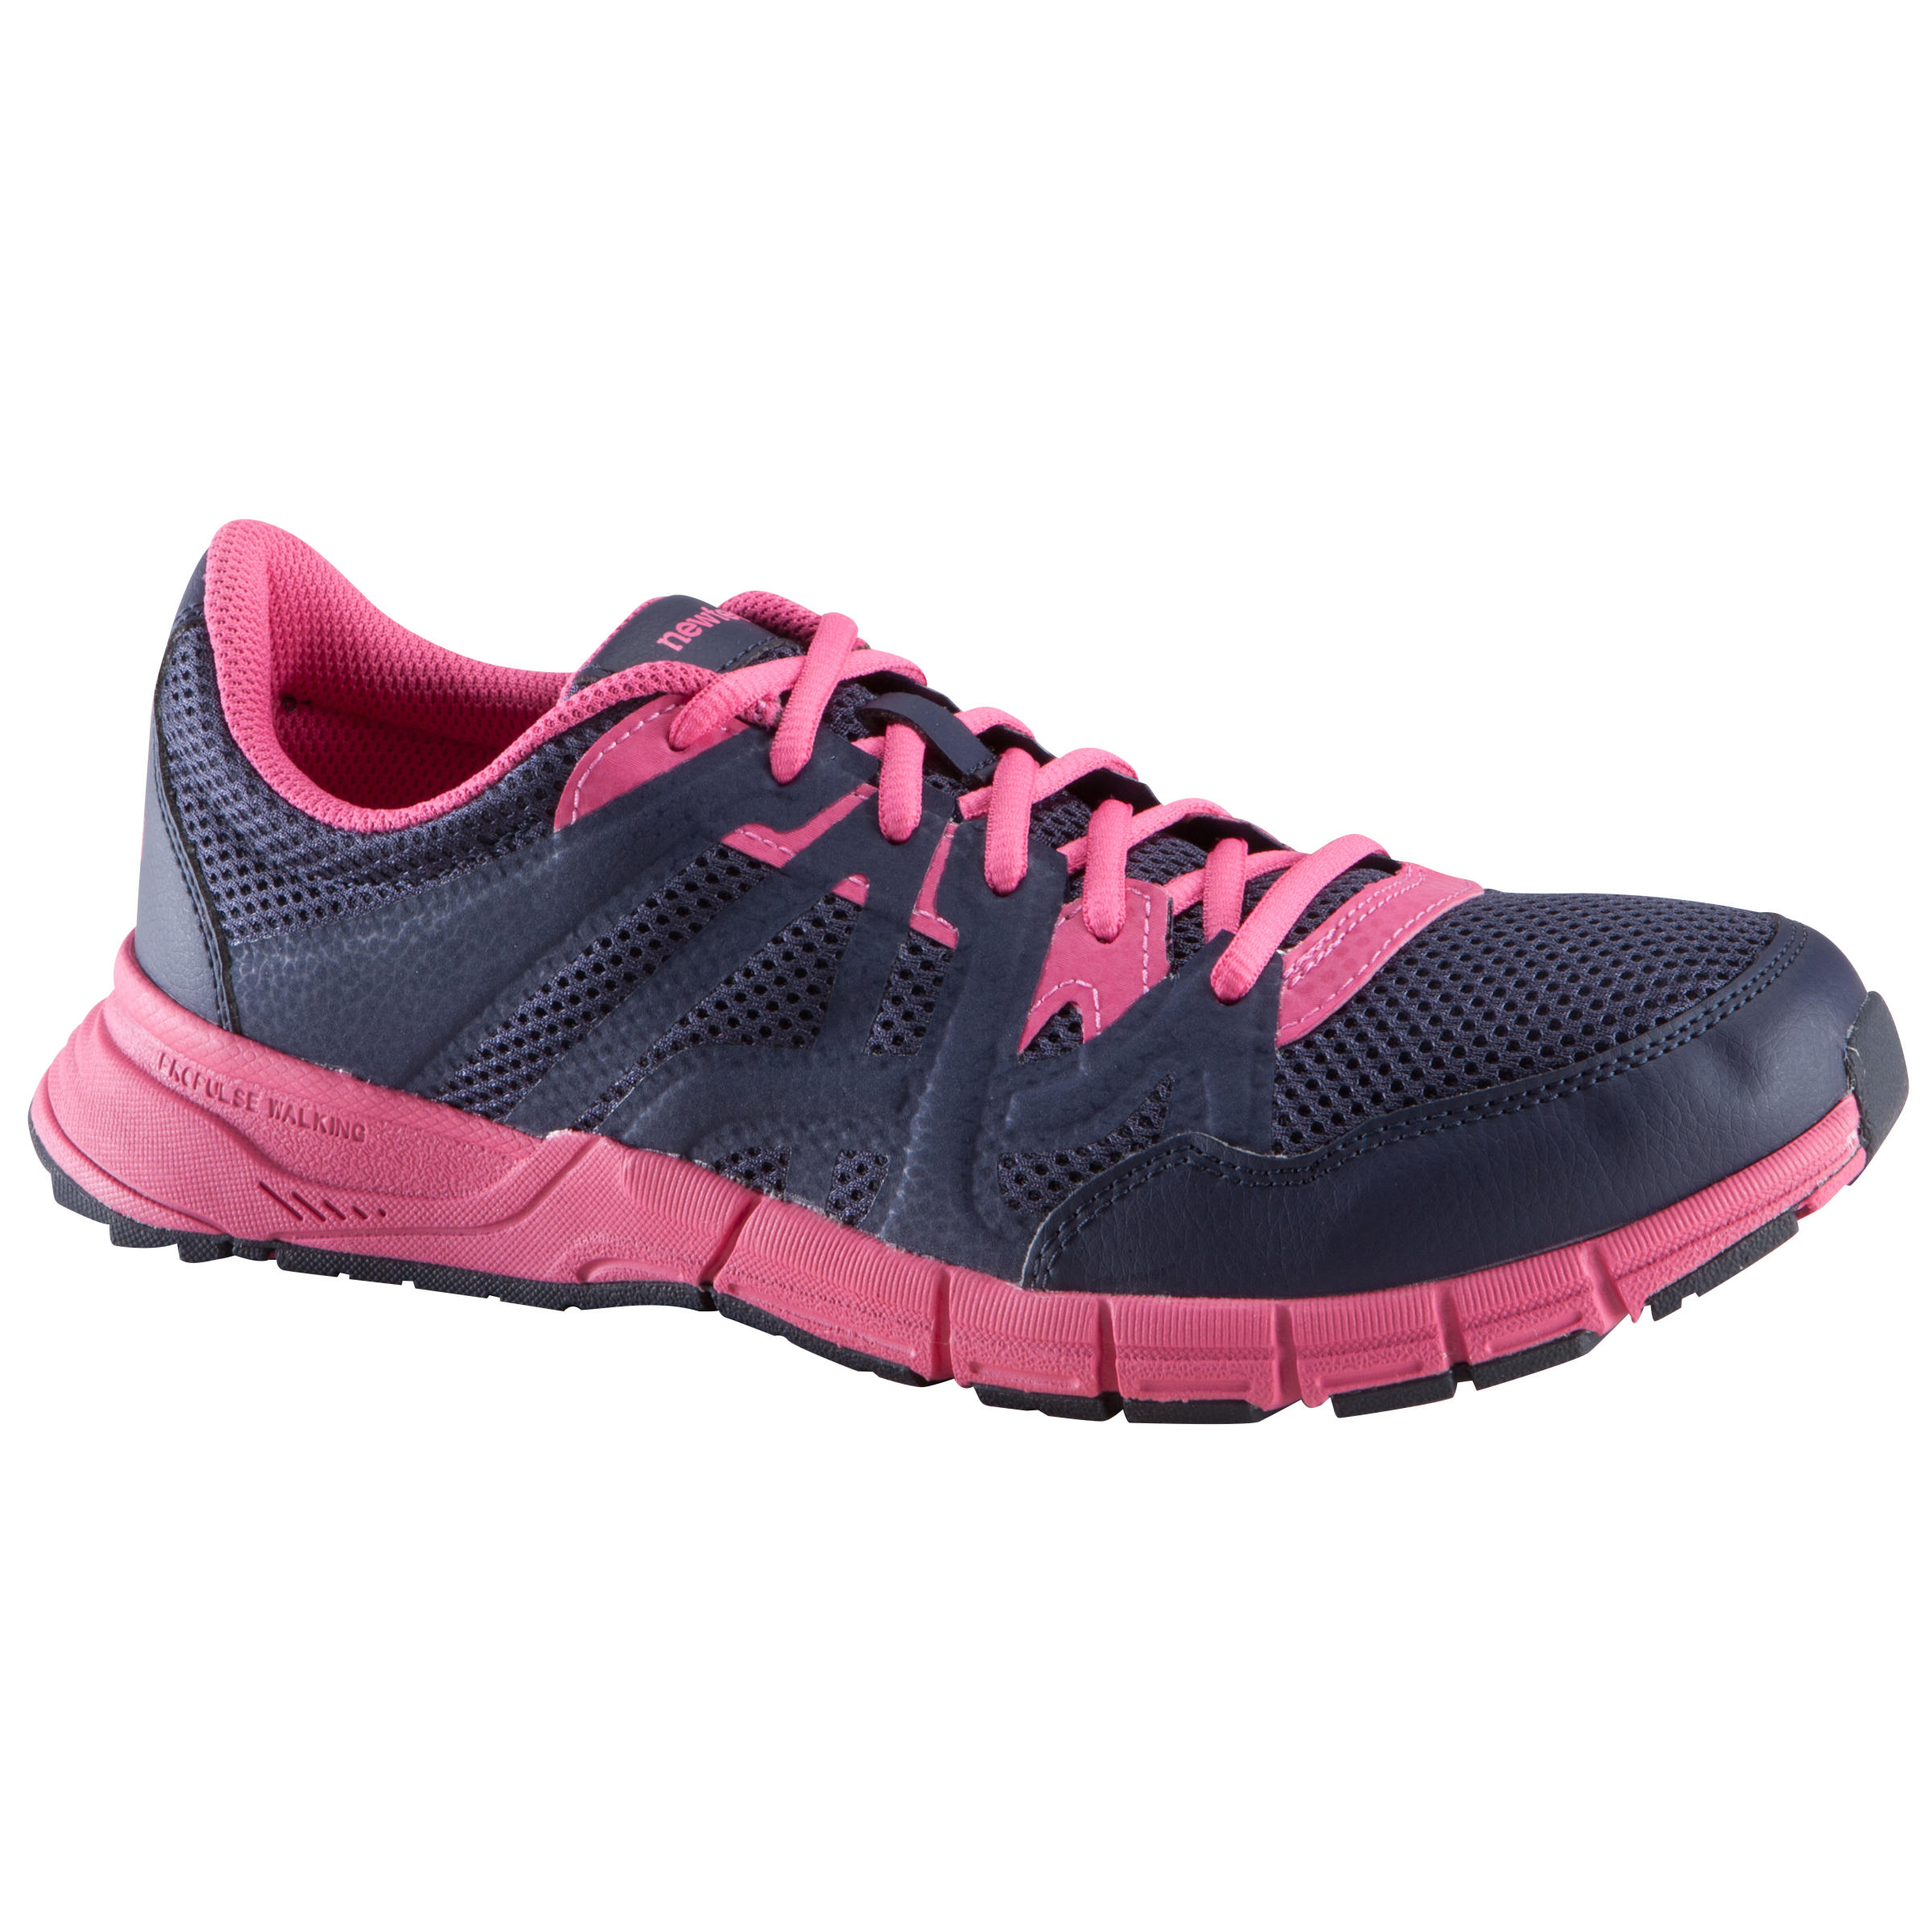 NEWFEEL Propulse Walk 200 women's power walking shoes - navy/pink